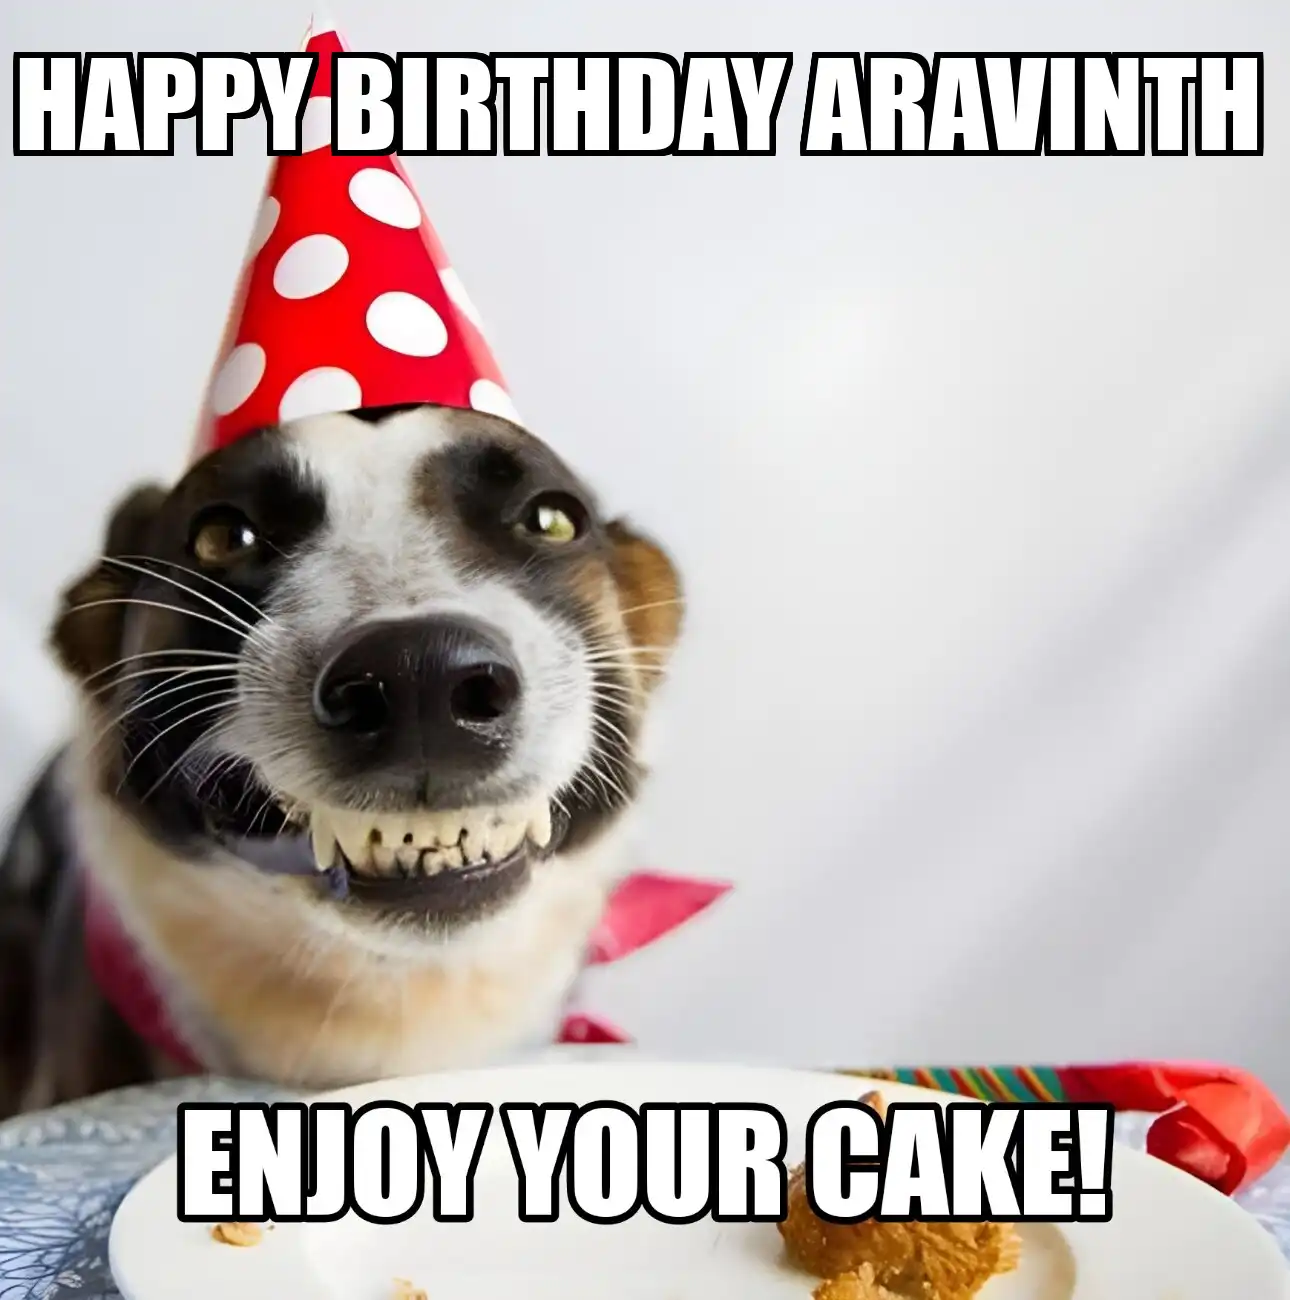 Happy Birthday Aravinth Enjoy Your Cake Dog Meme